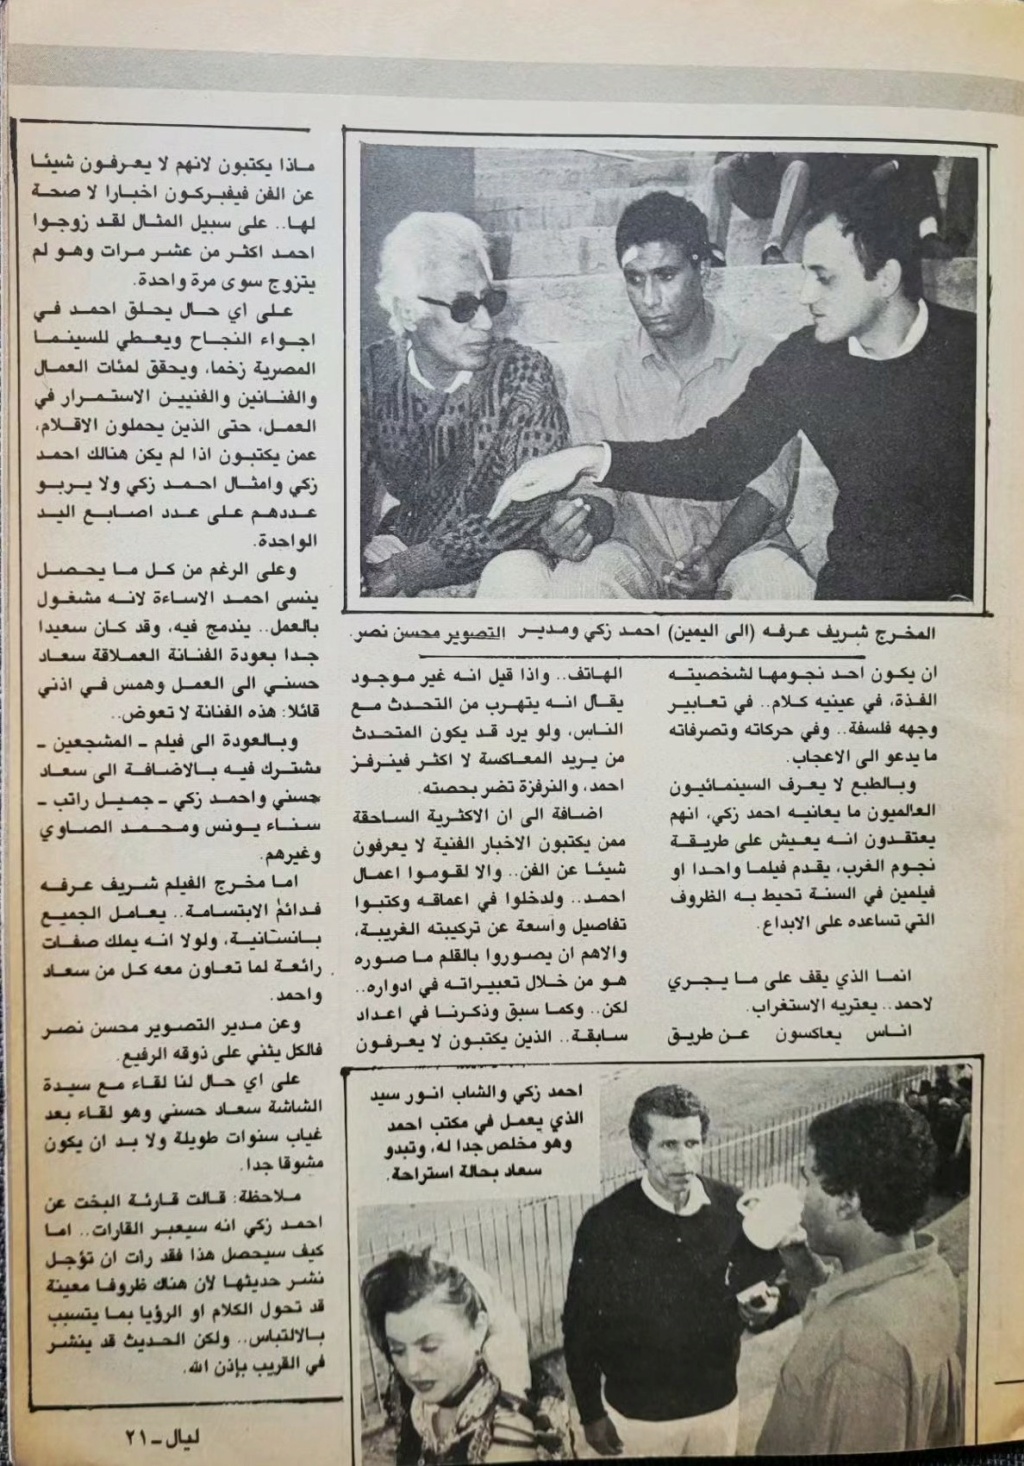 1988 - مقال صحفي : جميع العاملين في فيلم المشجعين كانوا فرحين بطلة .. سعاد حسني واحمد زكي 1988 م 421